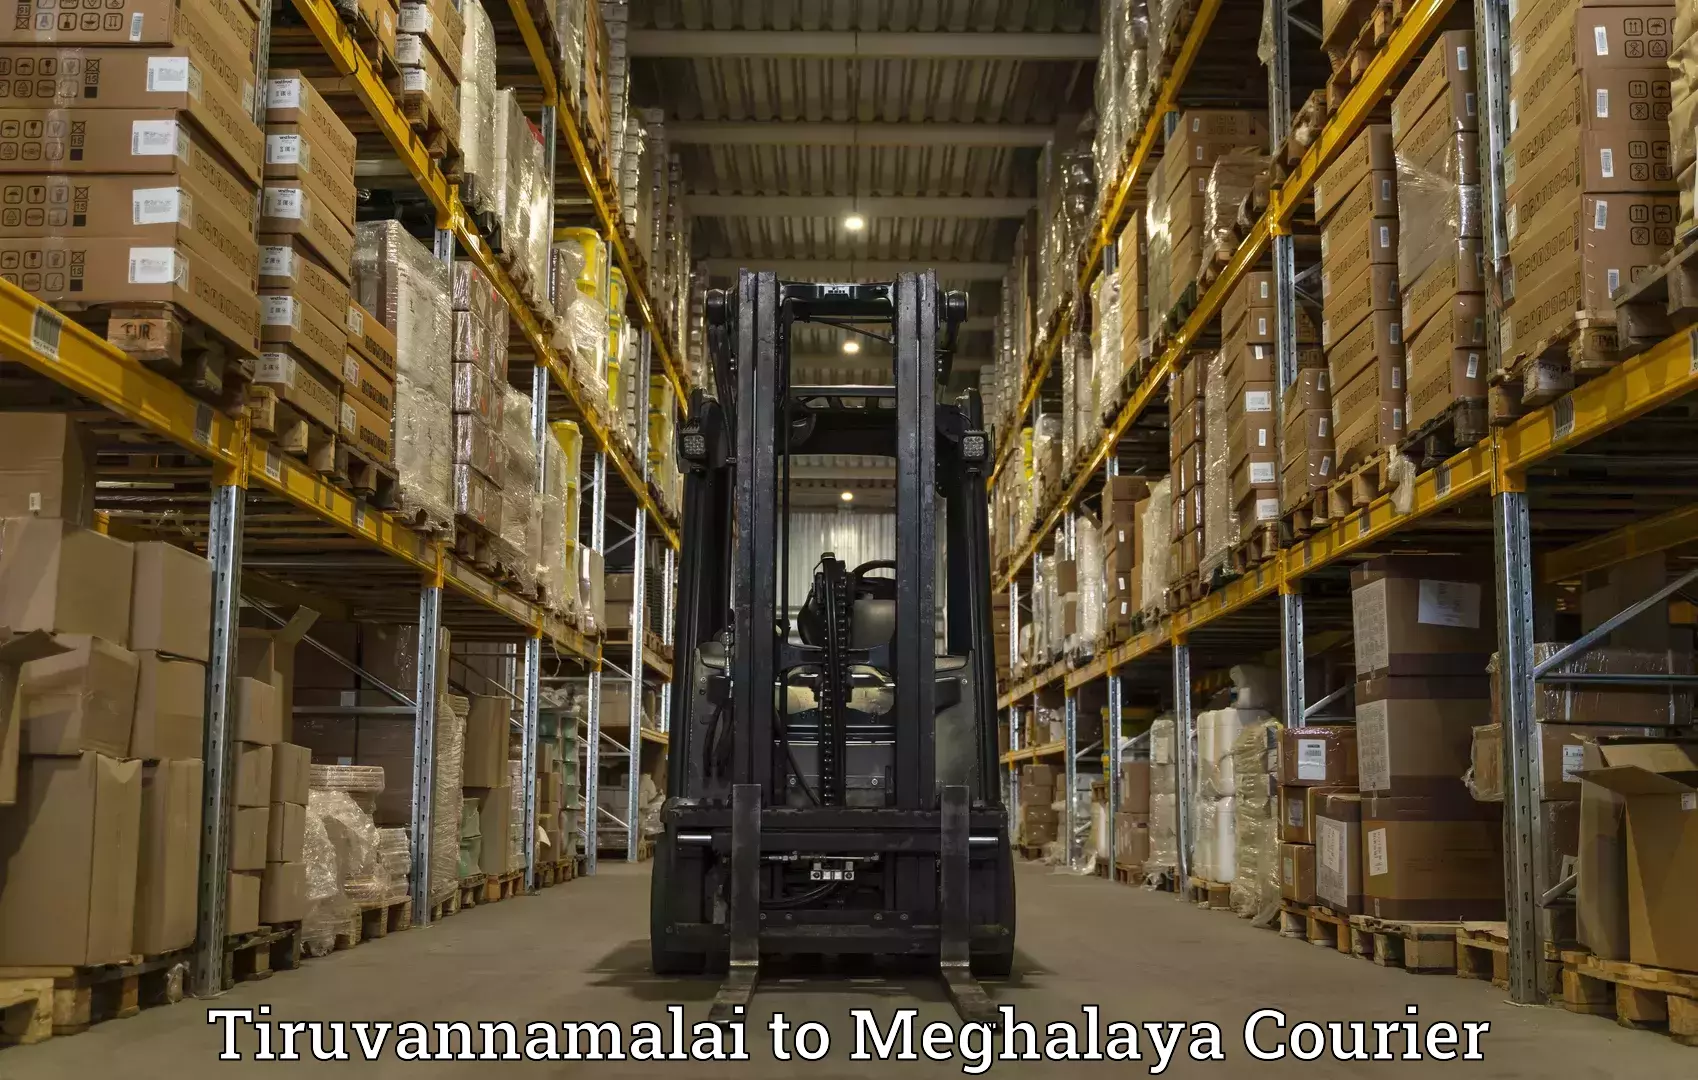 Express logistics providers Tiruvannamalai to Meghalaya